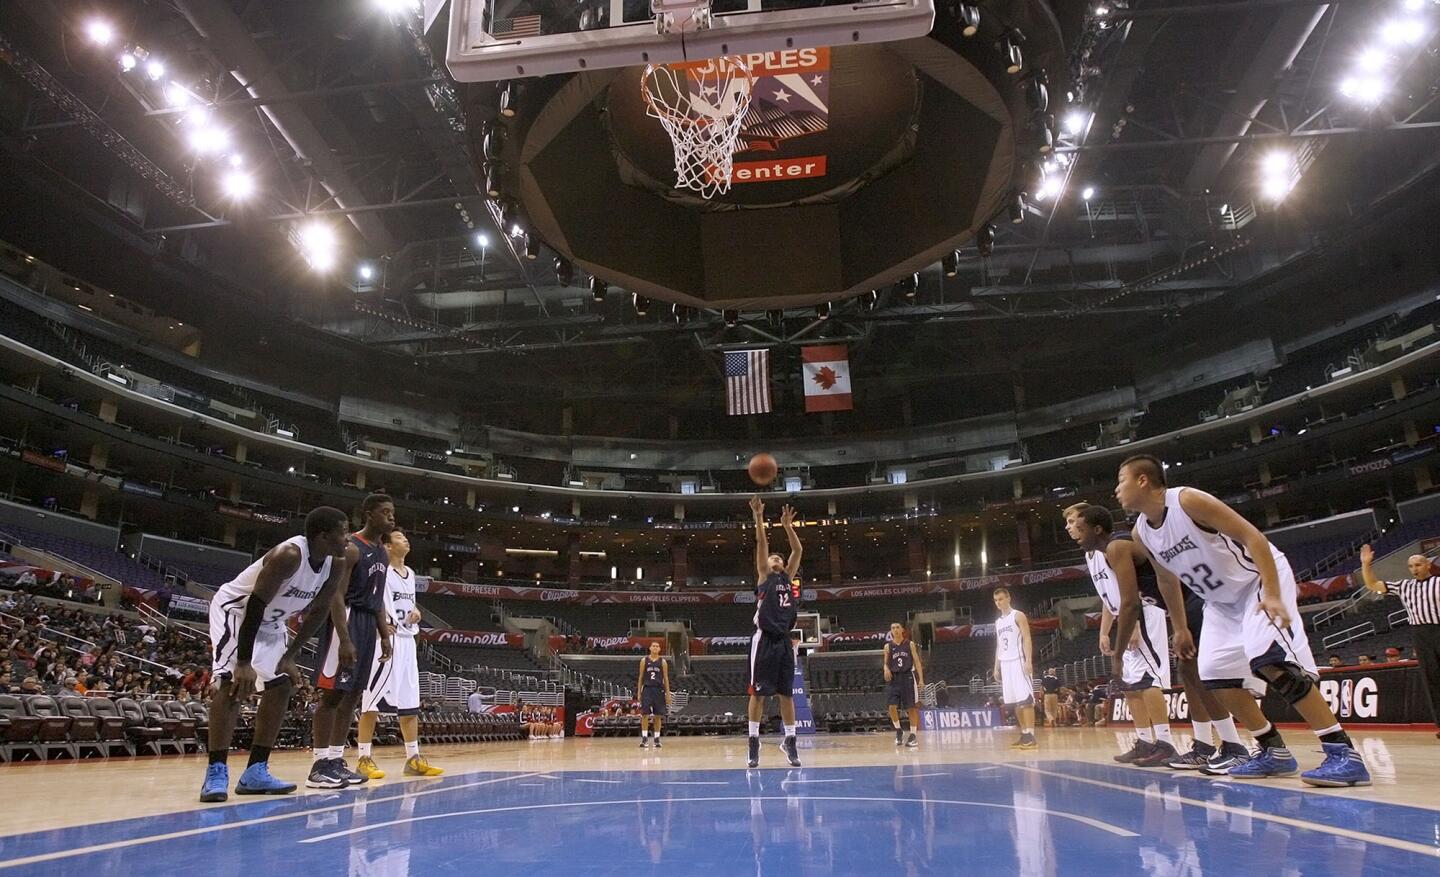 Bell-Jeff basketball vs. San Gabriel Academy at Staples Center